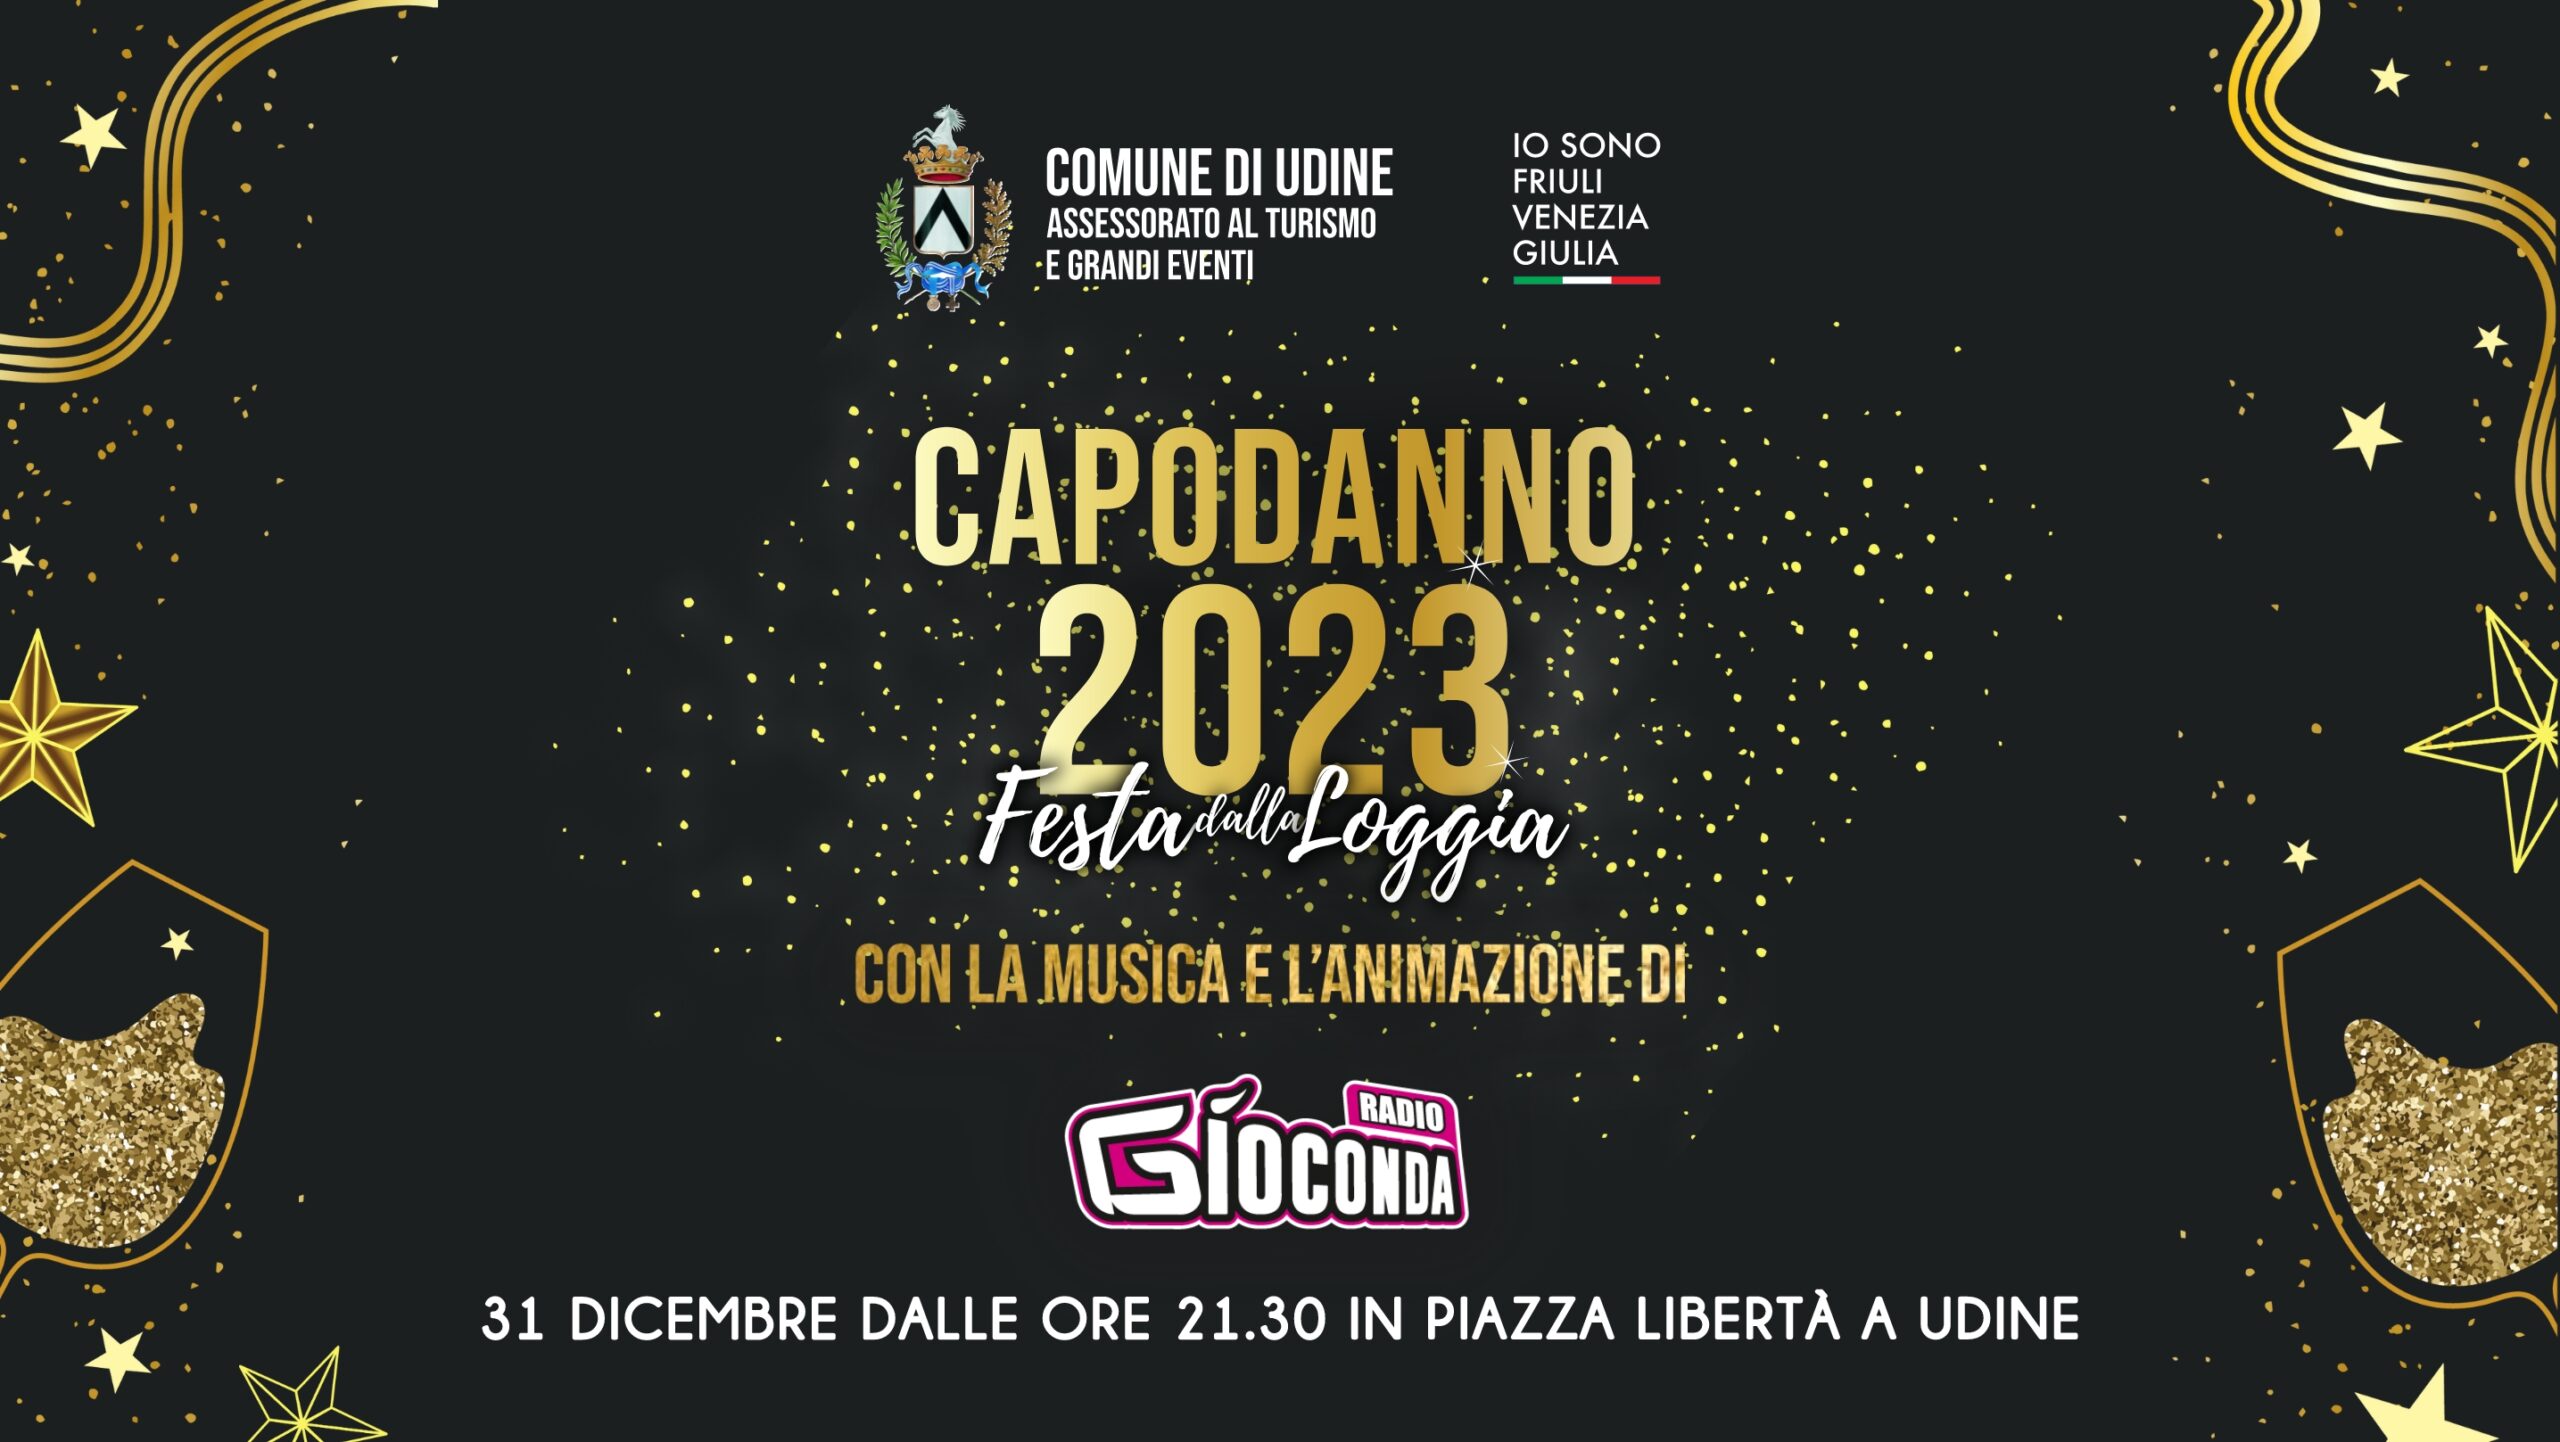 Capodanno 2023 - Festa dalla Loggia - 31 dicembre a Udine con Radio Gioconda